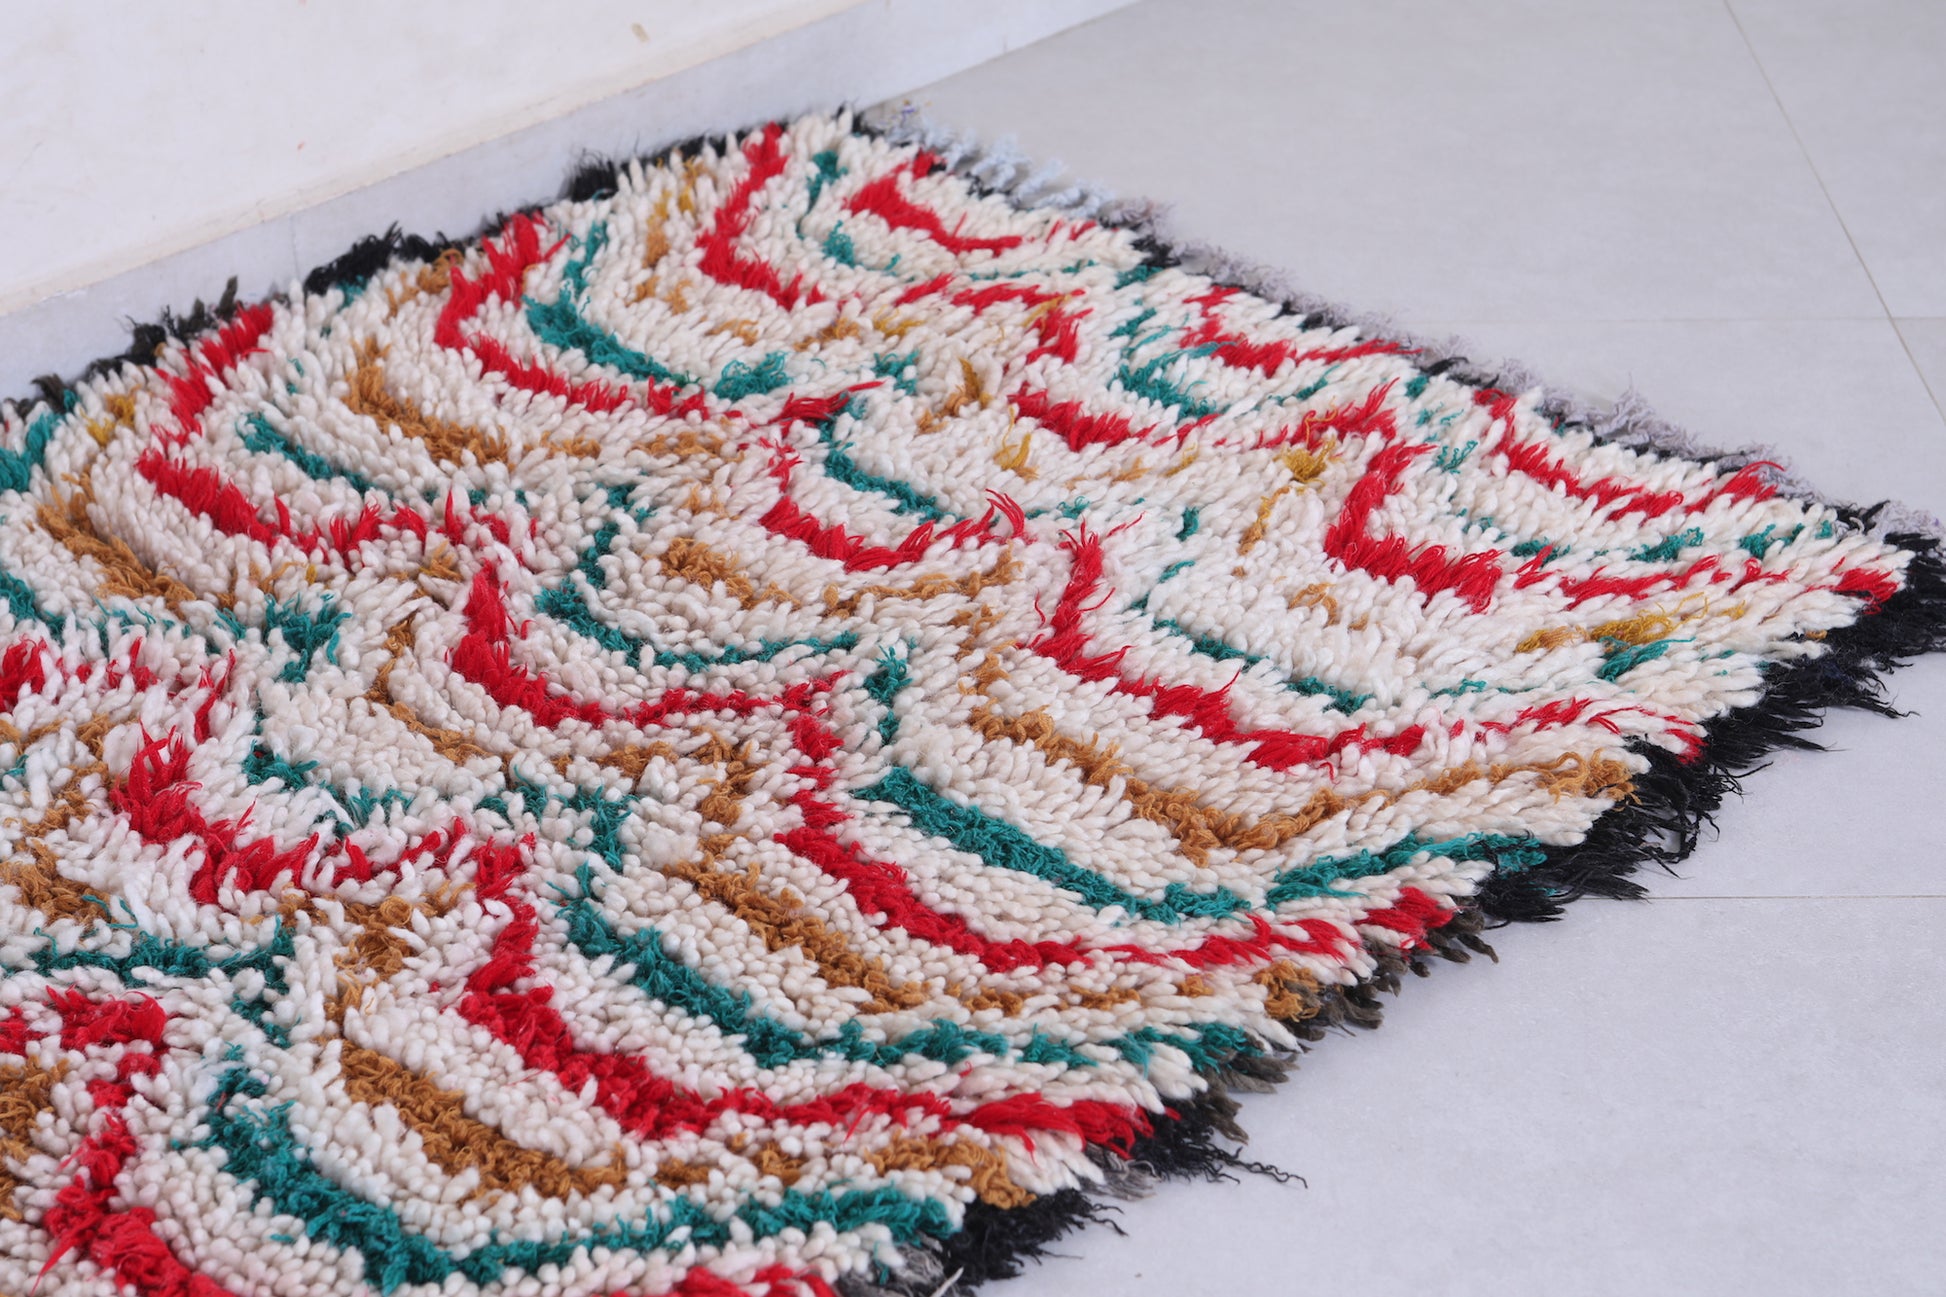 Moroccan hallway rug shag 2.8 X 5.7 Feet